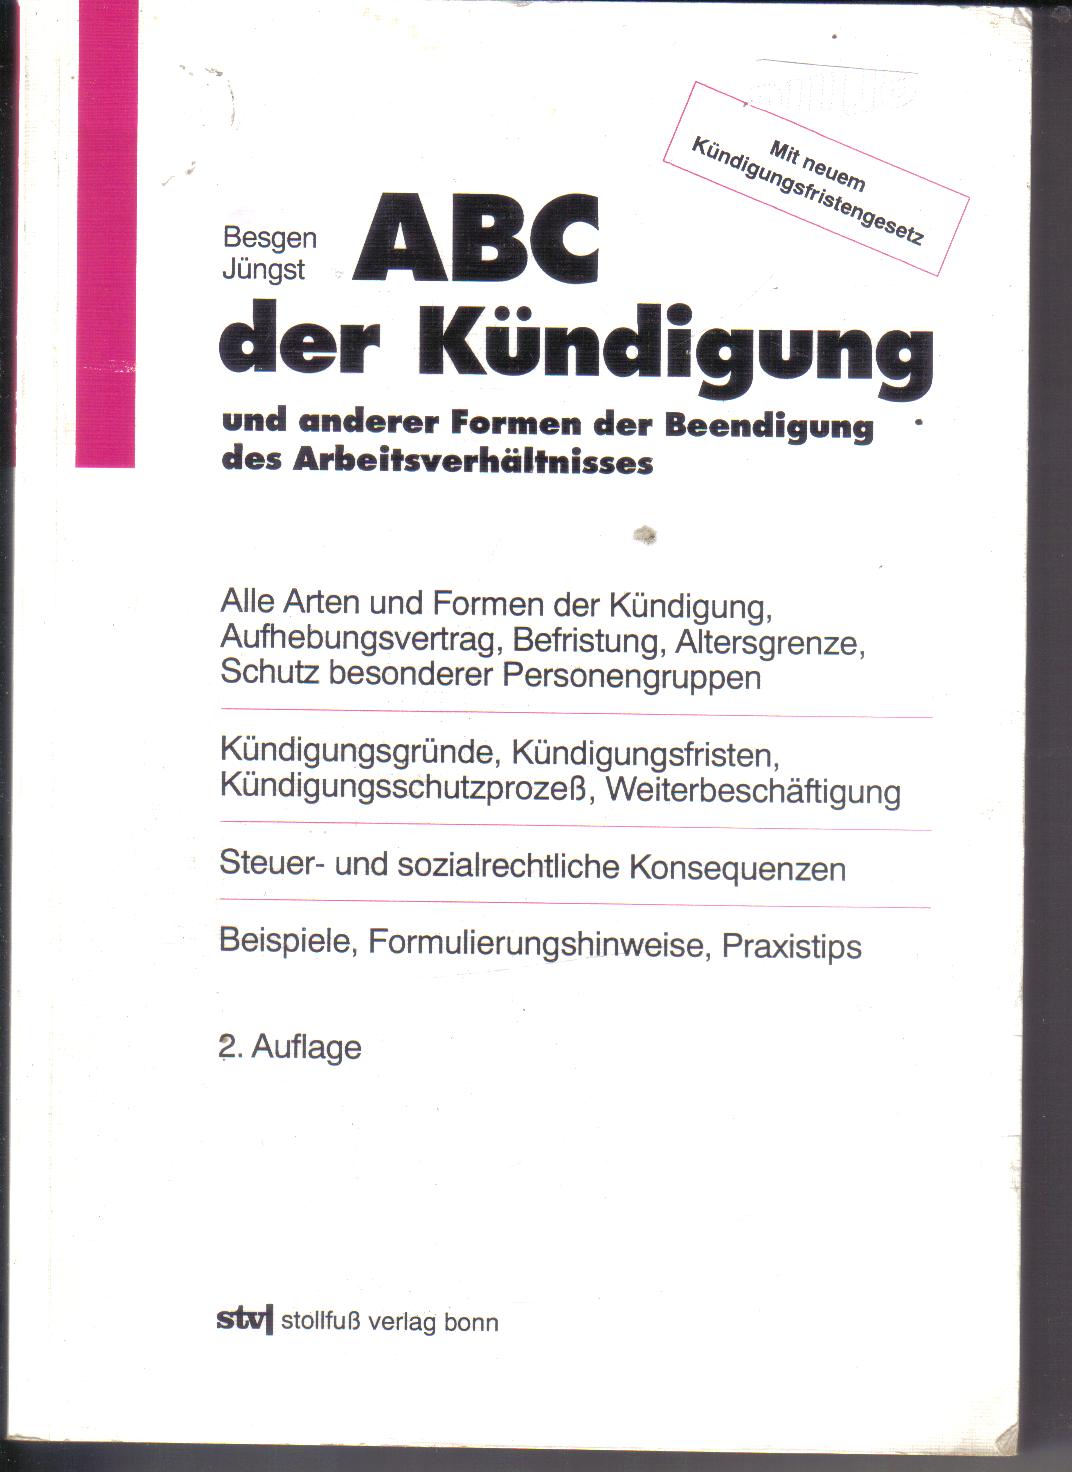 Das ABC  der KuendigungBesgen Juengst